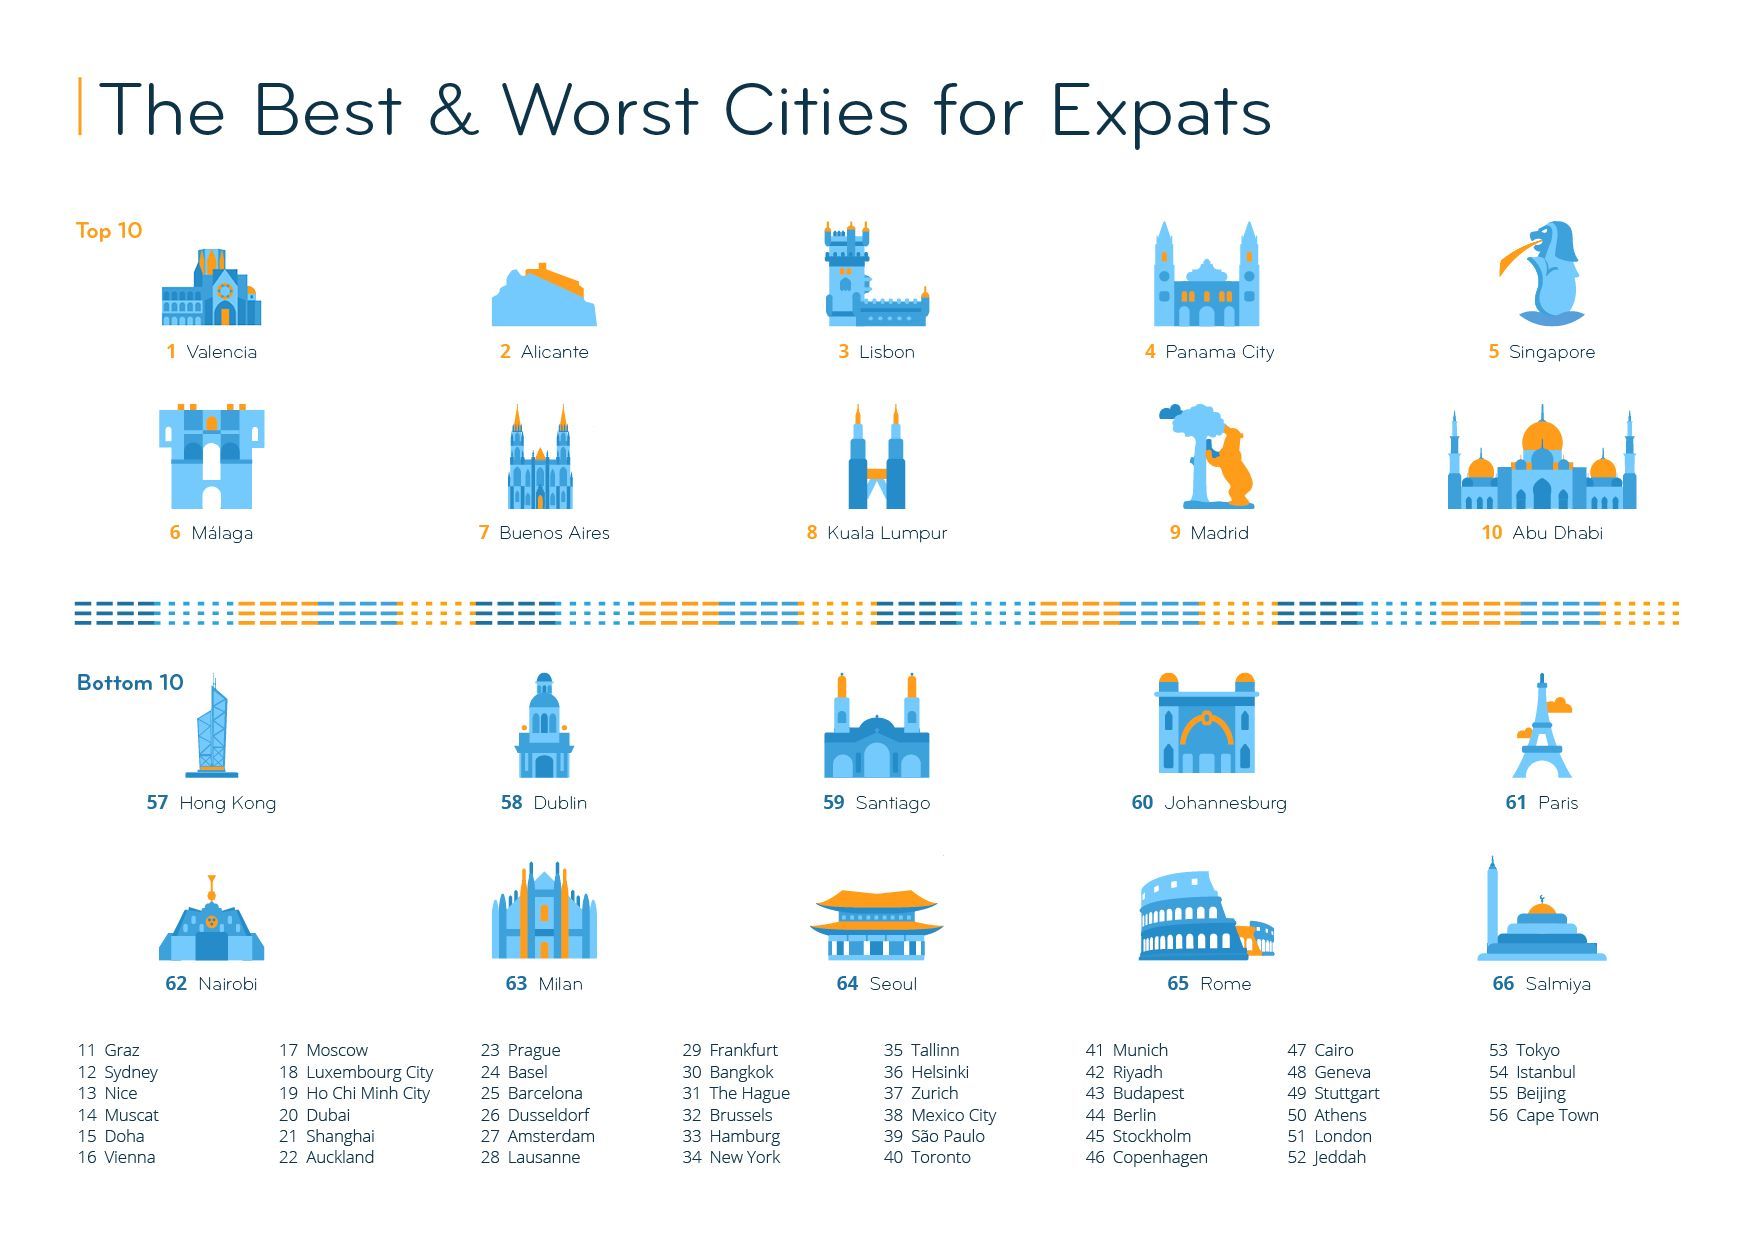 Mejores ciudades del mundo para vivir según los expatriados.